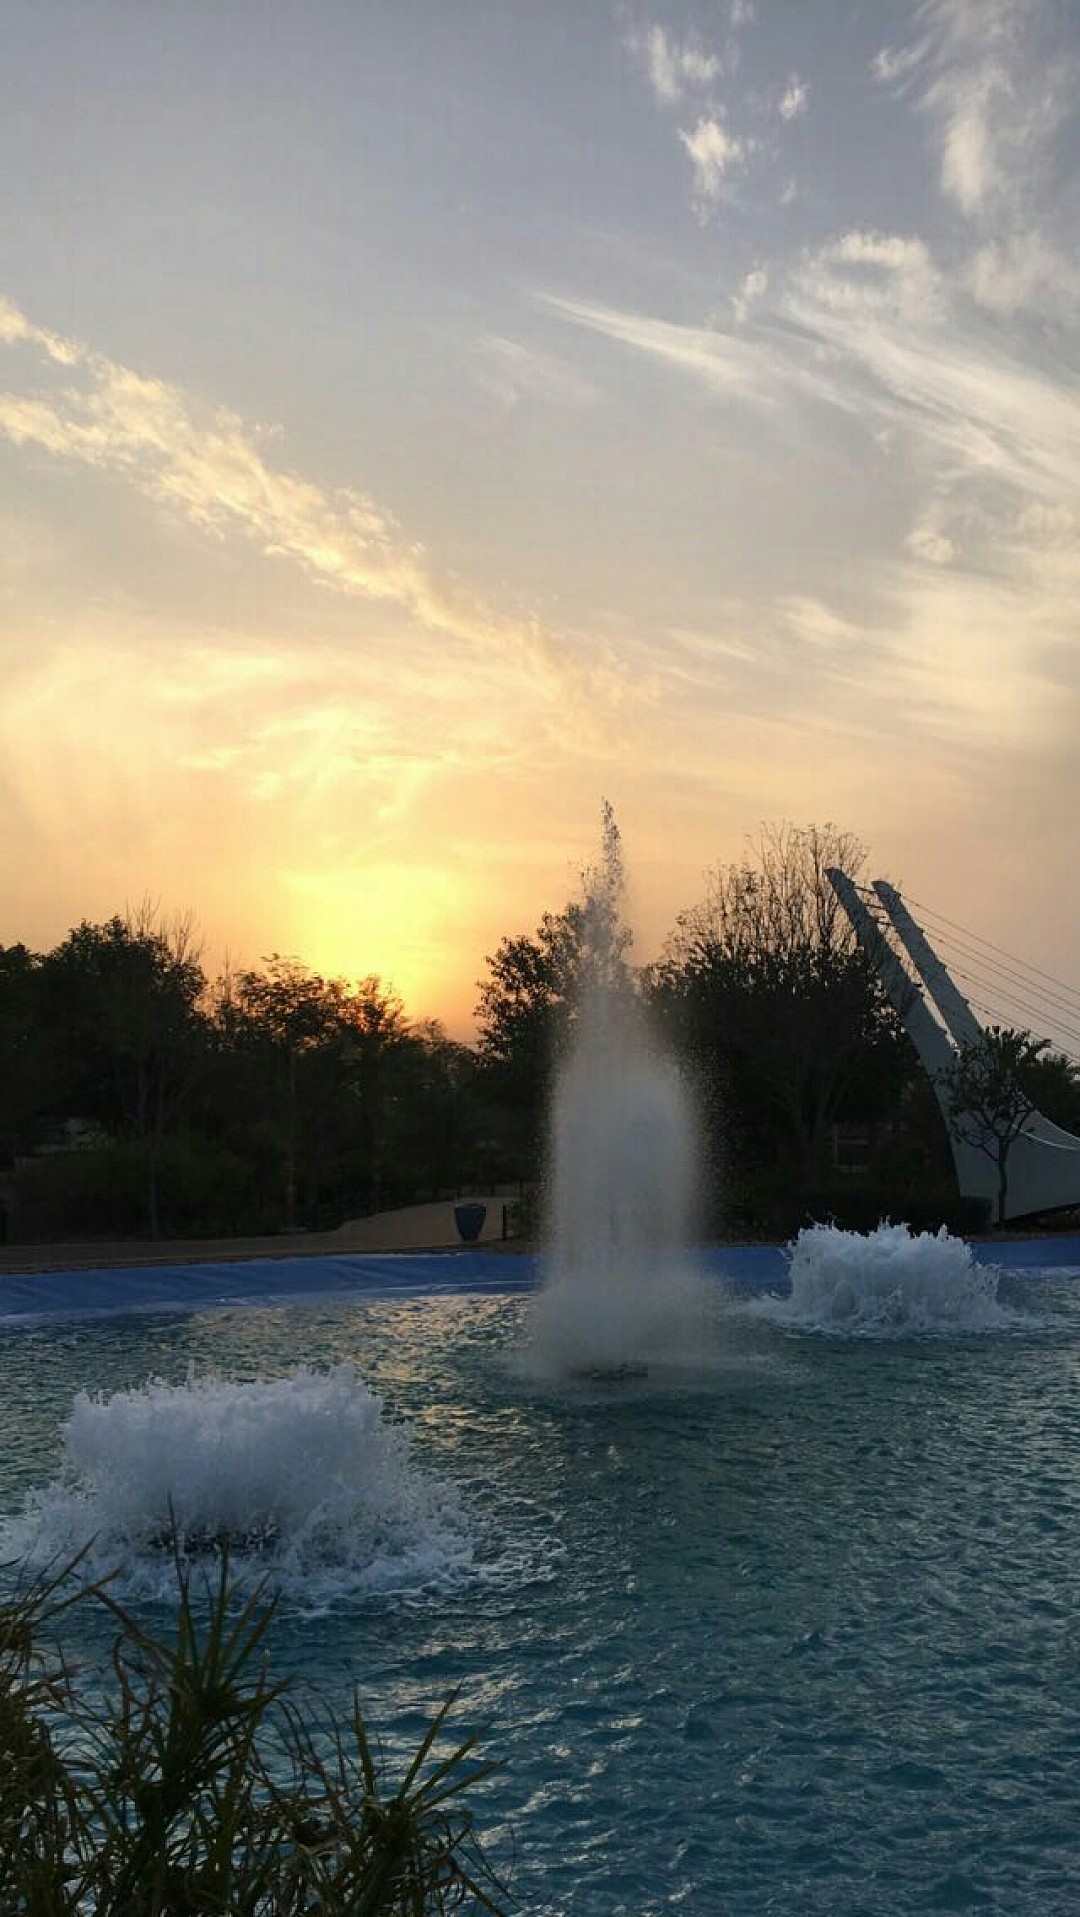 #حديقة الاميرة سبيكة #park @ Princess Sabeeka Park - البحرين